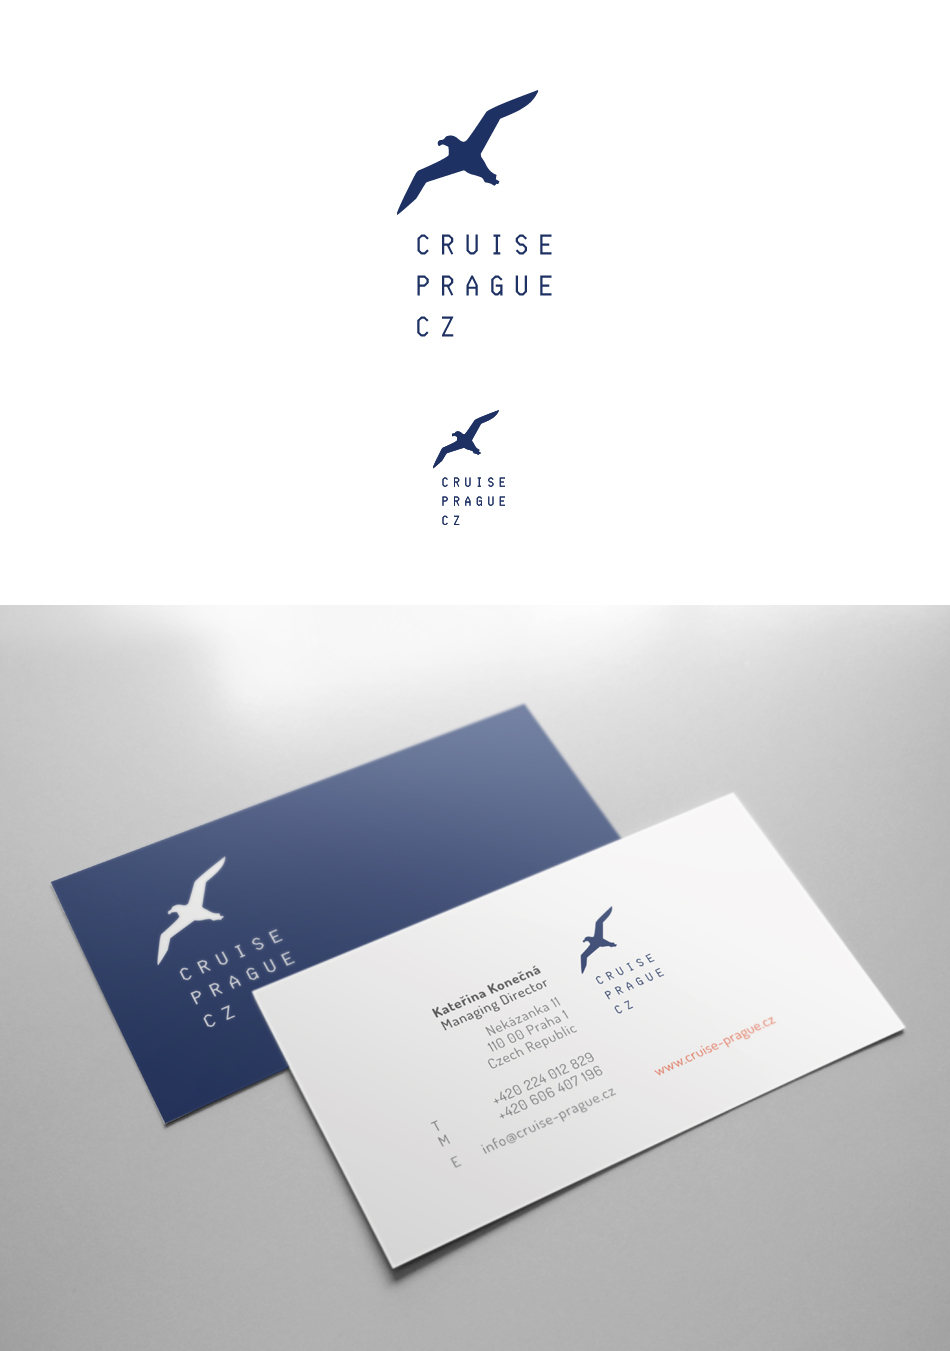 logo_Cruise_03_c